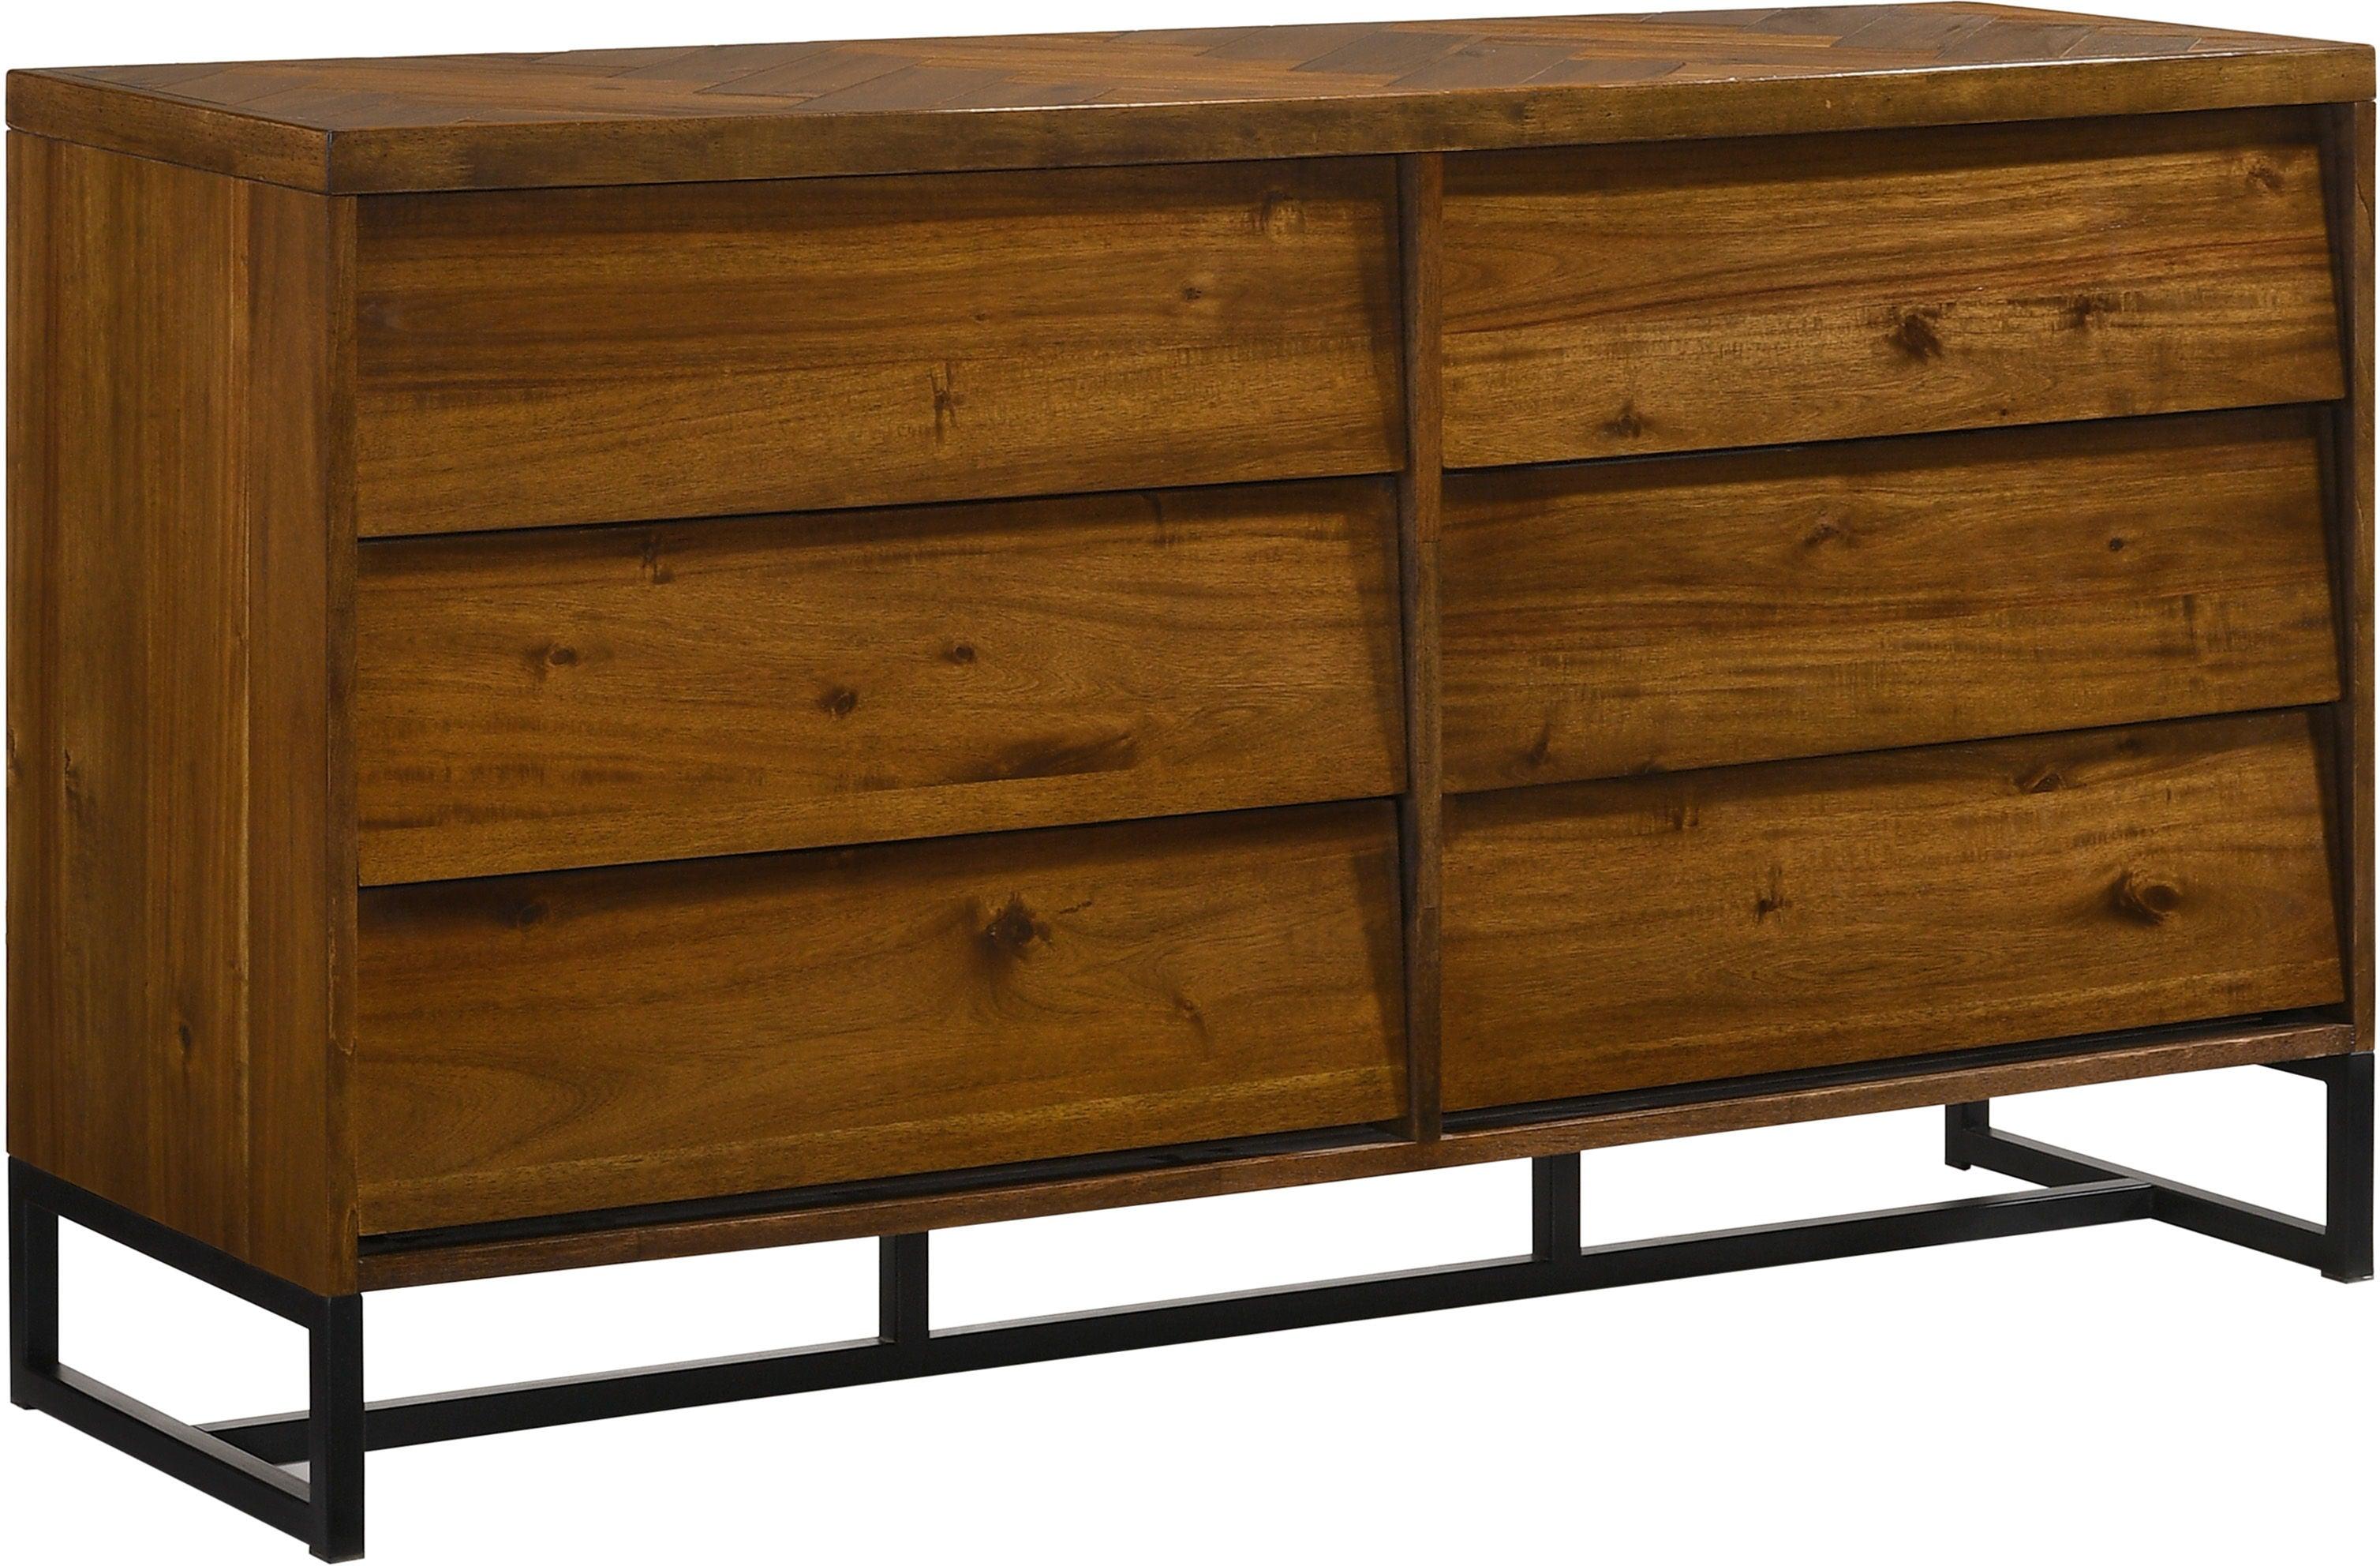 Meridian Furniture - Reed - Dresser - Antique Coffee - 5th Avenue Furniture